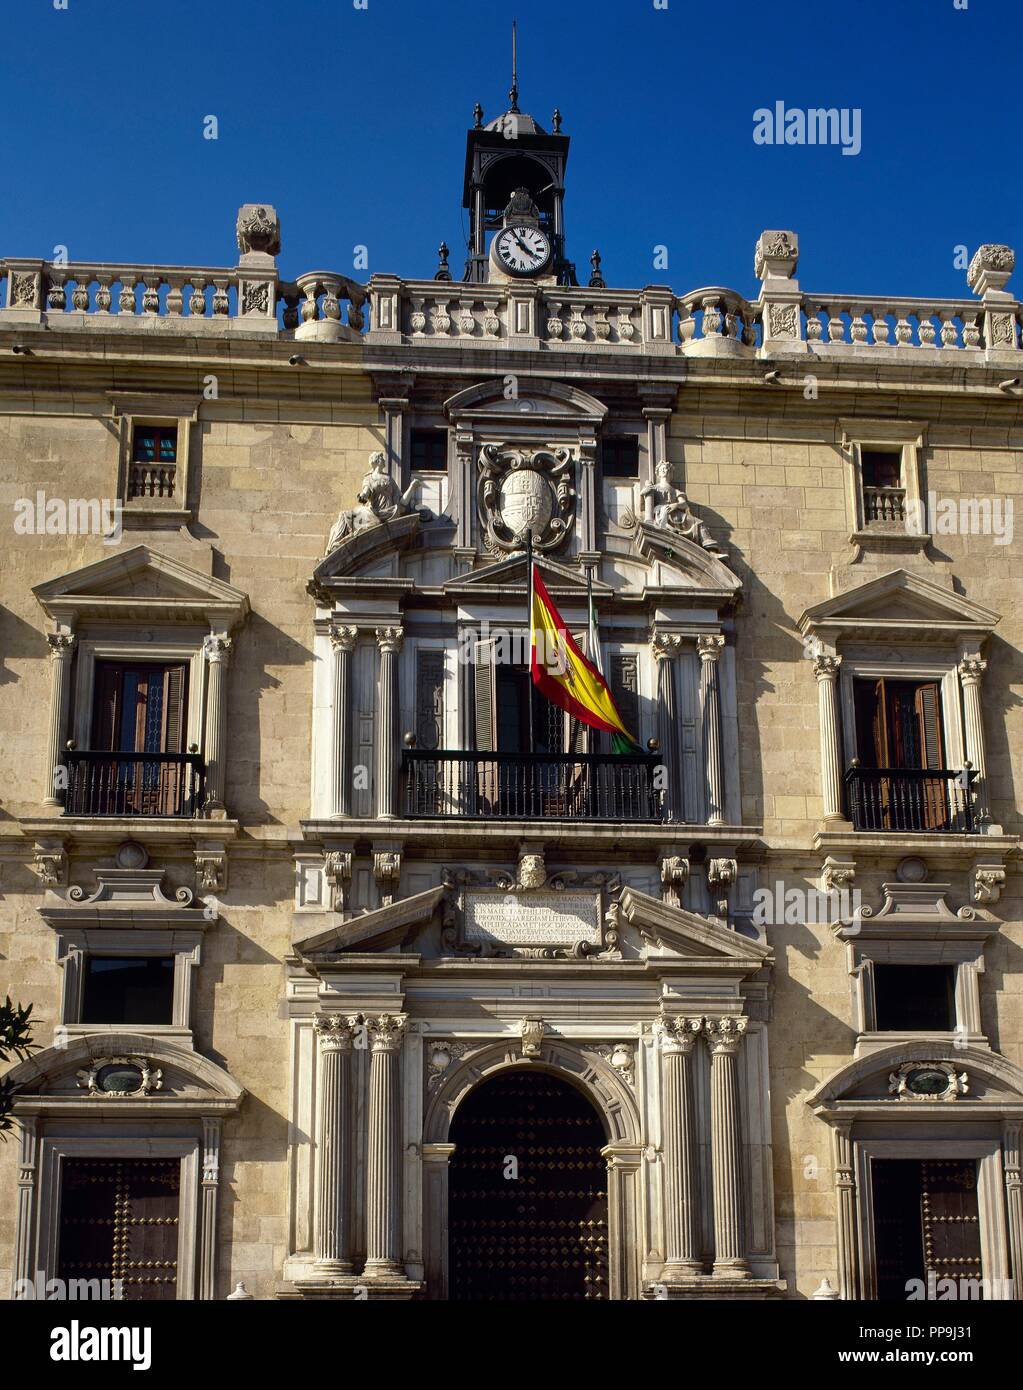 Granada, Andalusien, Spanien. Palast der Königlichen Kanzlei. Detail der Fassade. Institution, die von den Katholischen Königen angelegt, das Tribunal von Ciudad Real nach Granada. Das Gebäude stammt aus der Zeit um 1530, während der Herrschaft von Karl I. von der Andalusischen Architekten Francisco del Castillo el Mozo (1528-1586) entwickelt wurde. Stockfoto